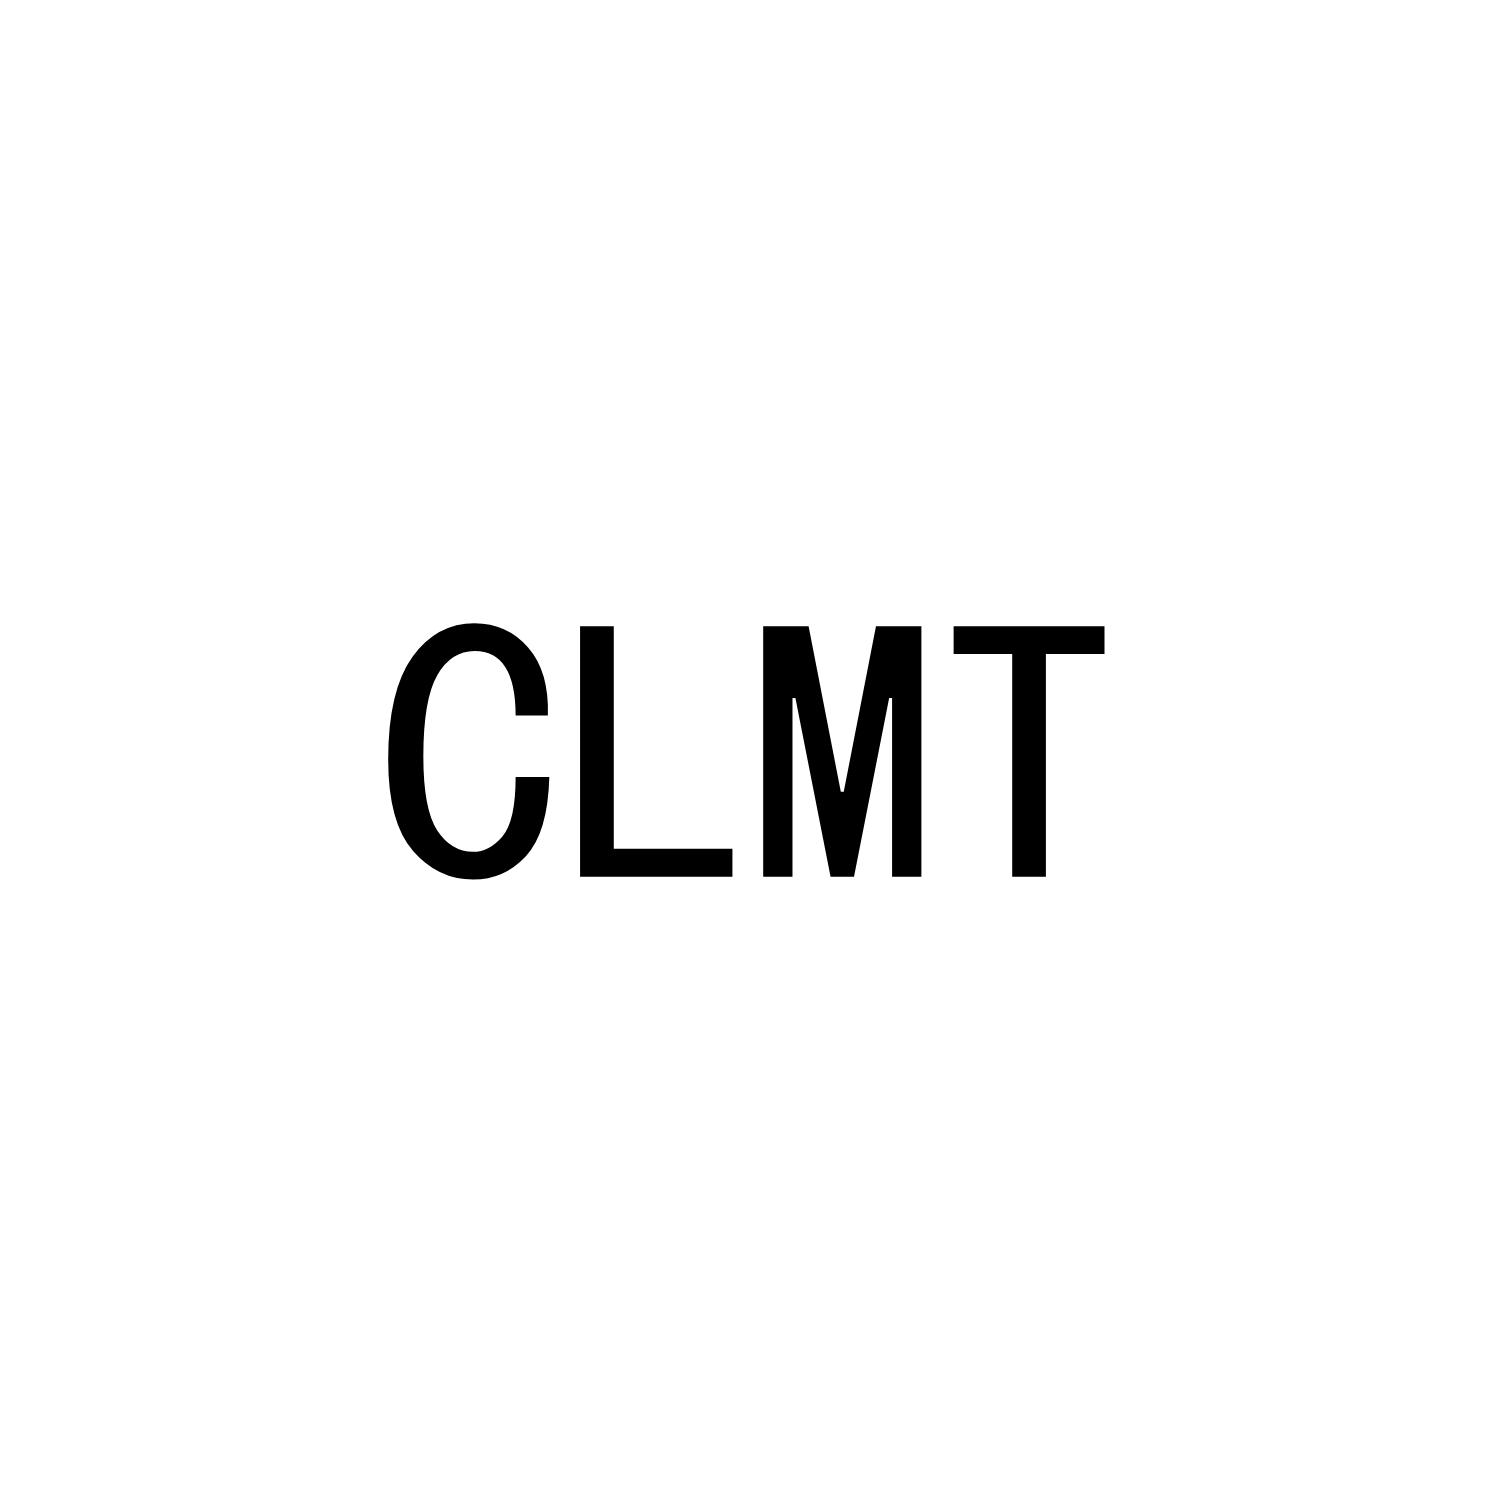 CLMT